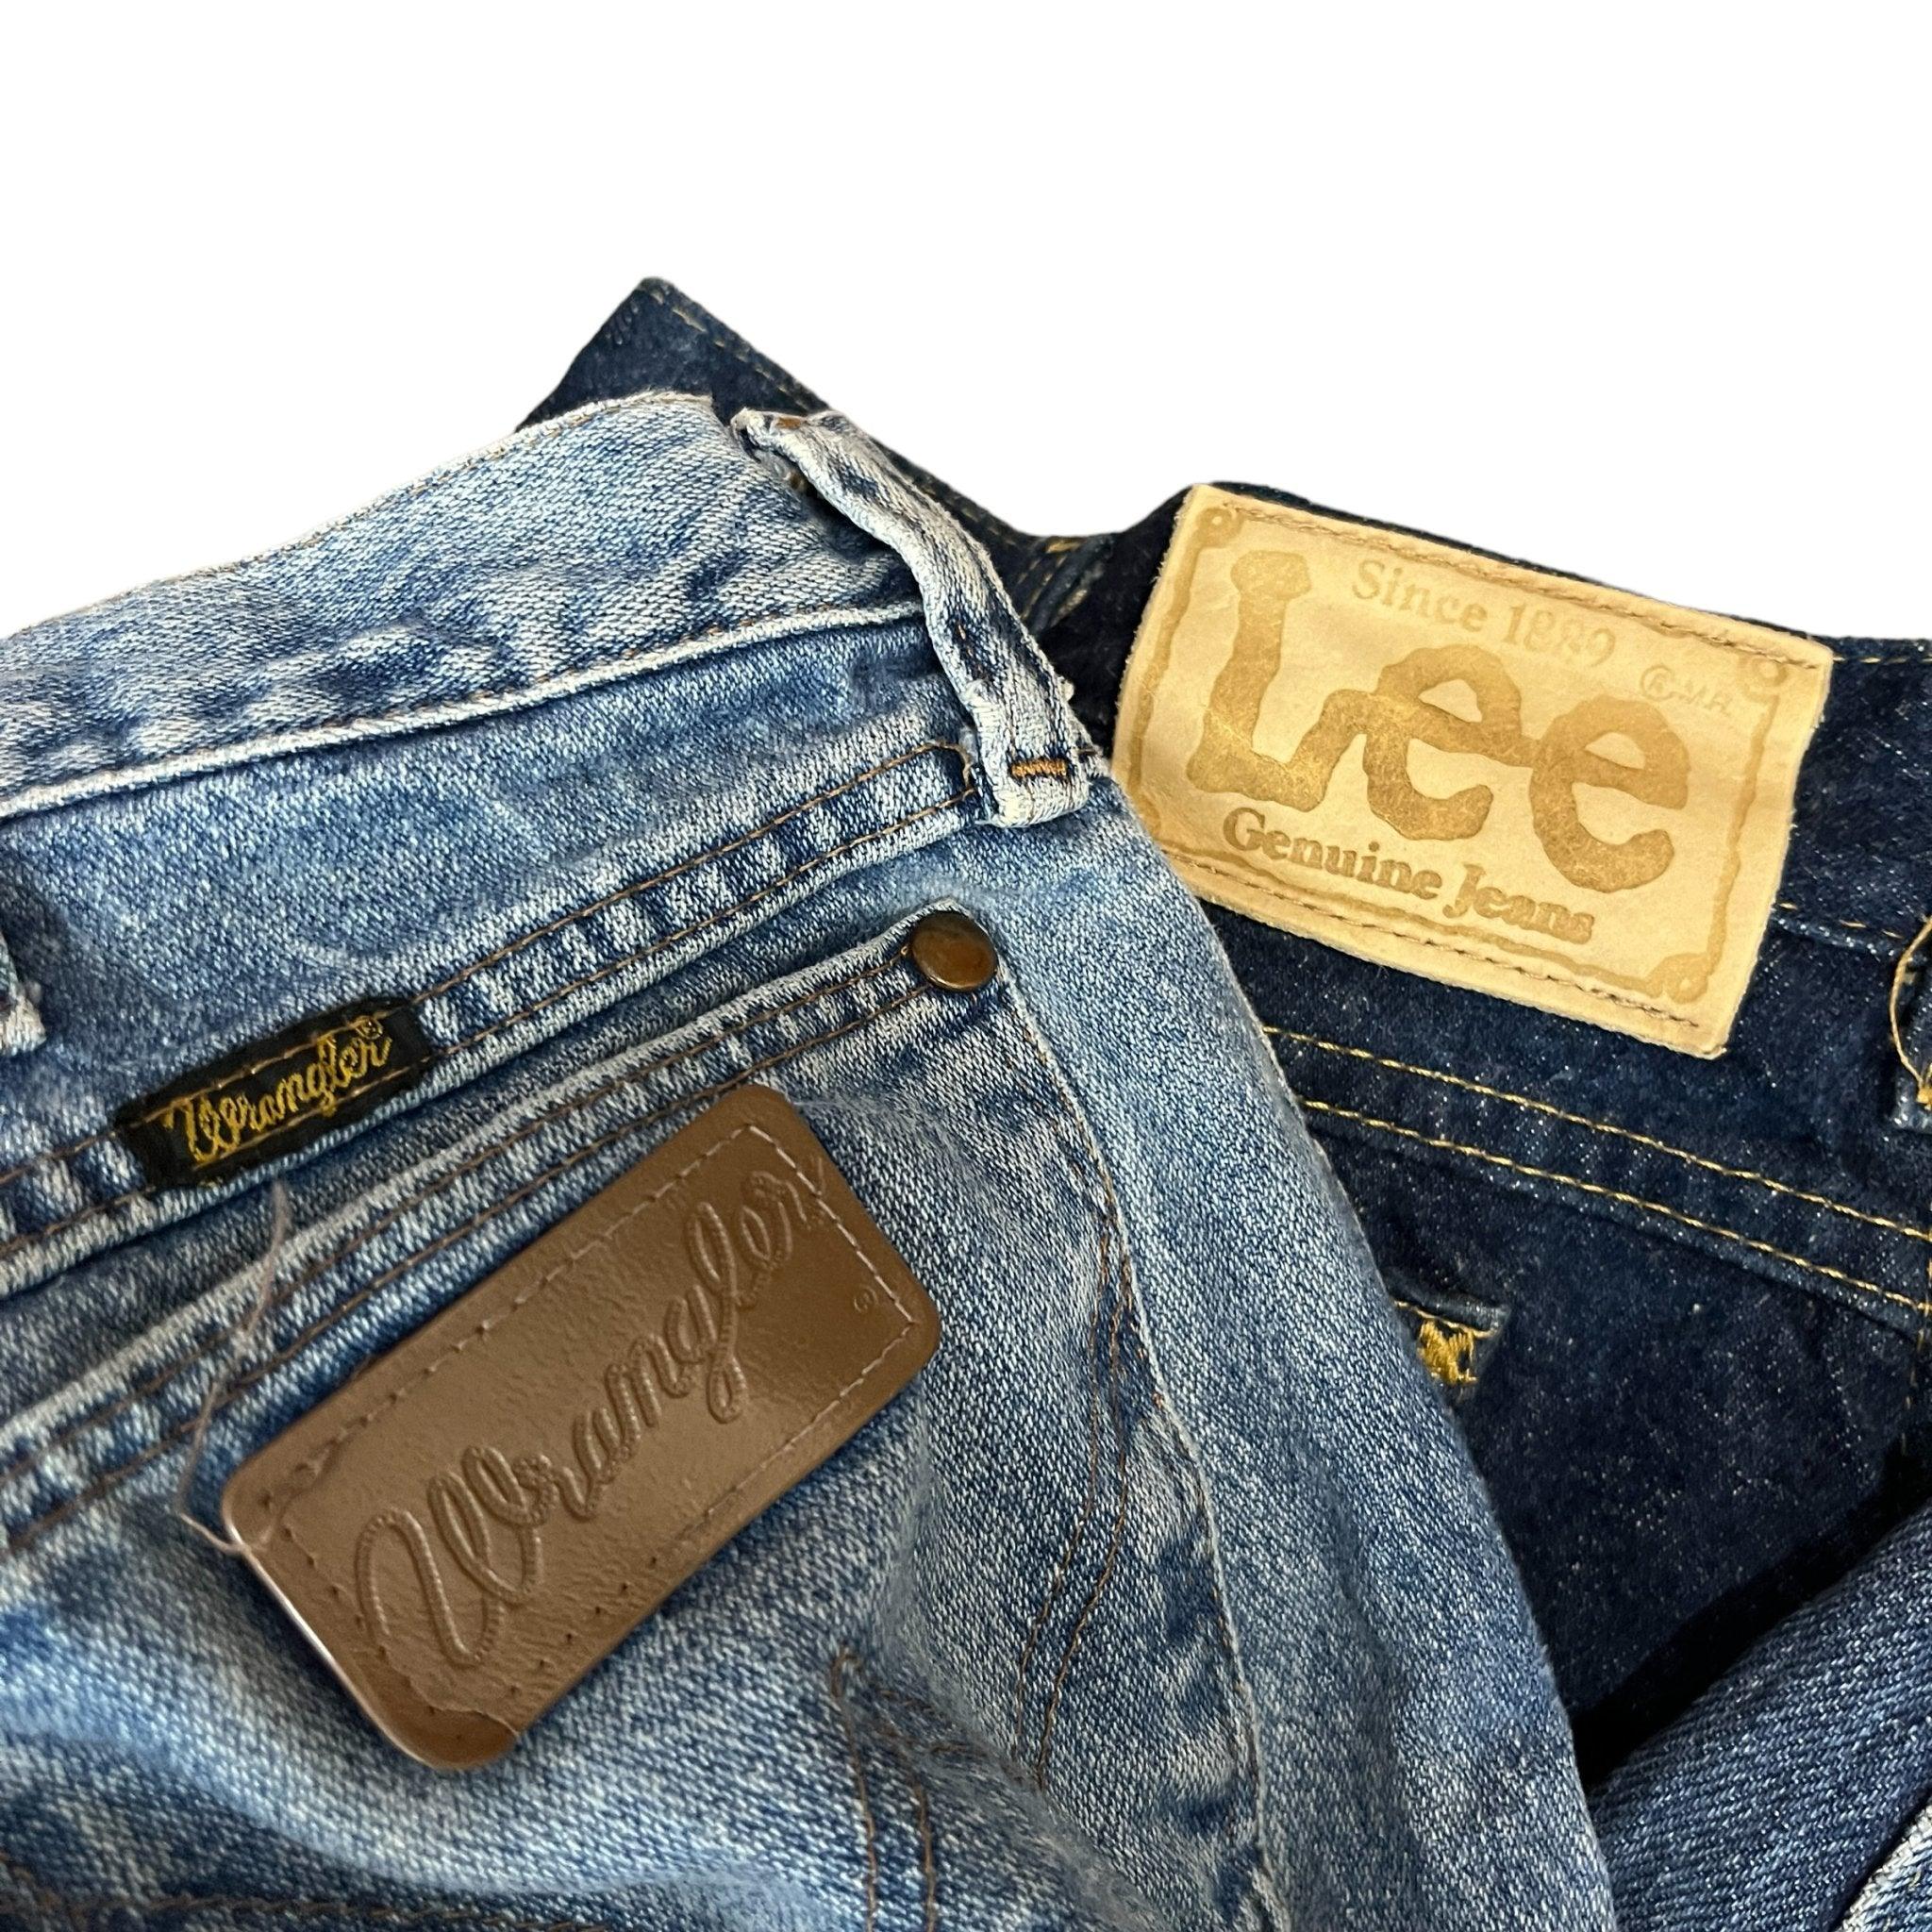 Lee Wrangler Denim Jeans Mix Per Pound - Visione Vintage